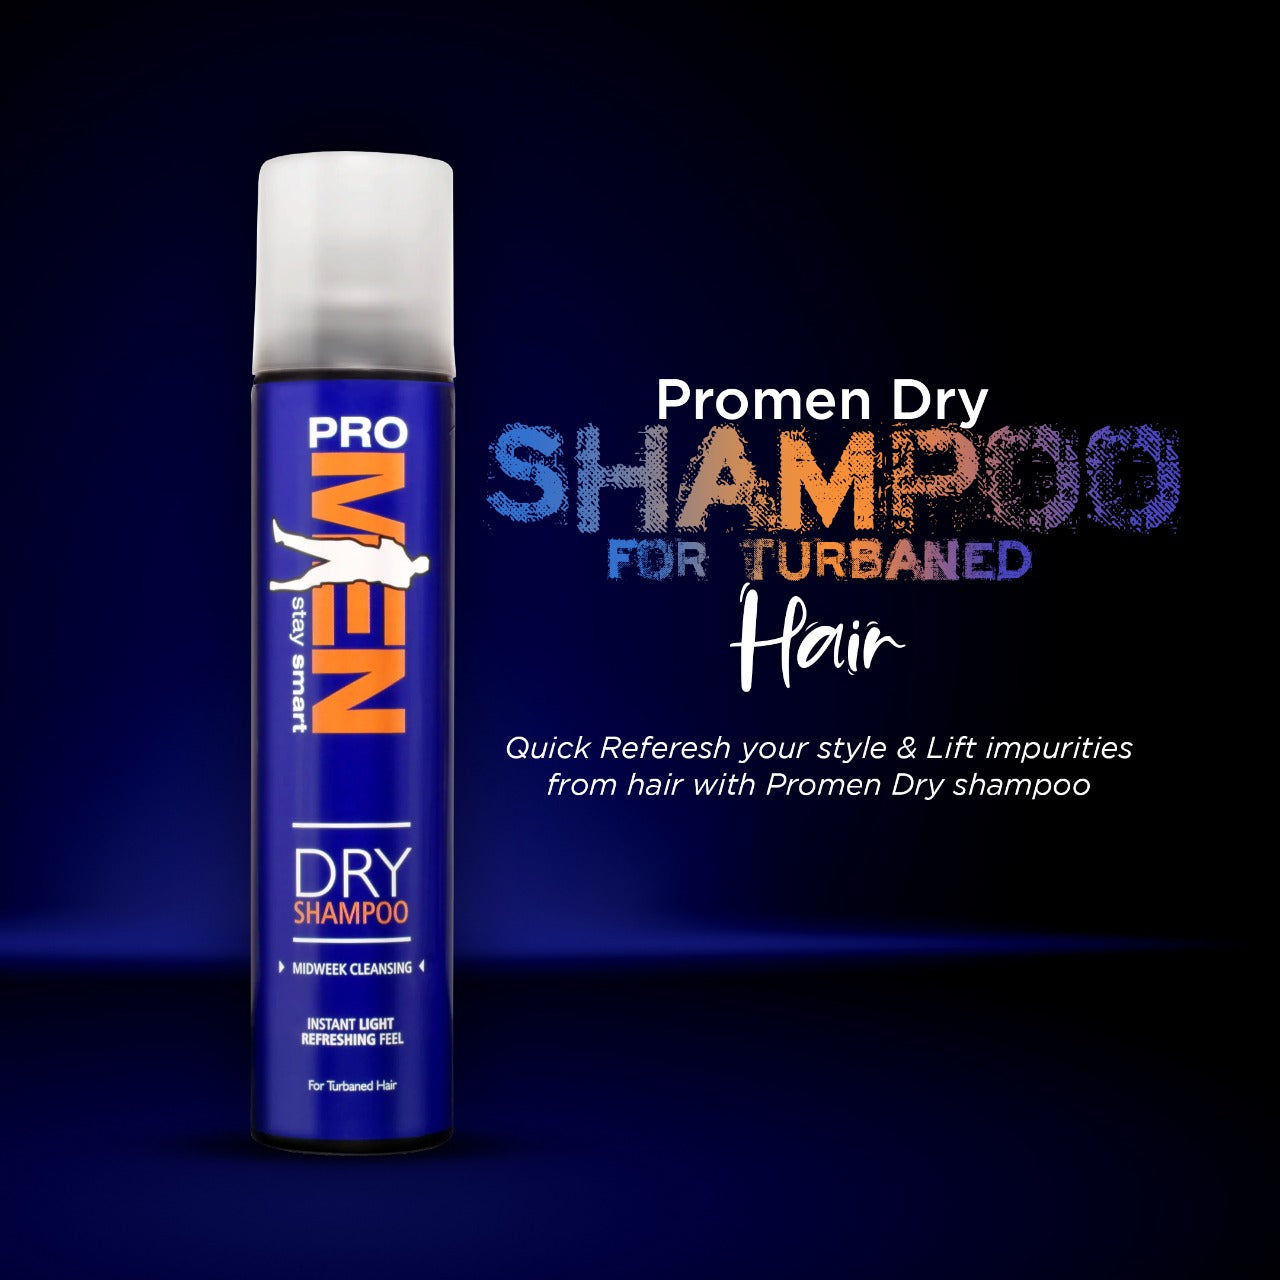 Promen Dry Shampoo For Turbaned Hair